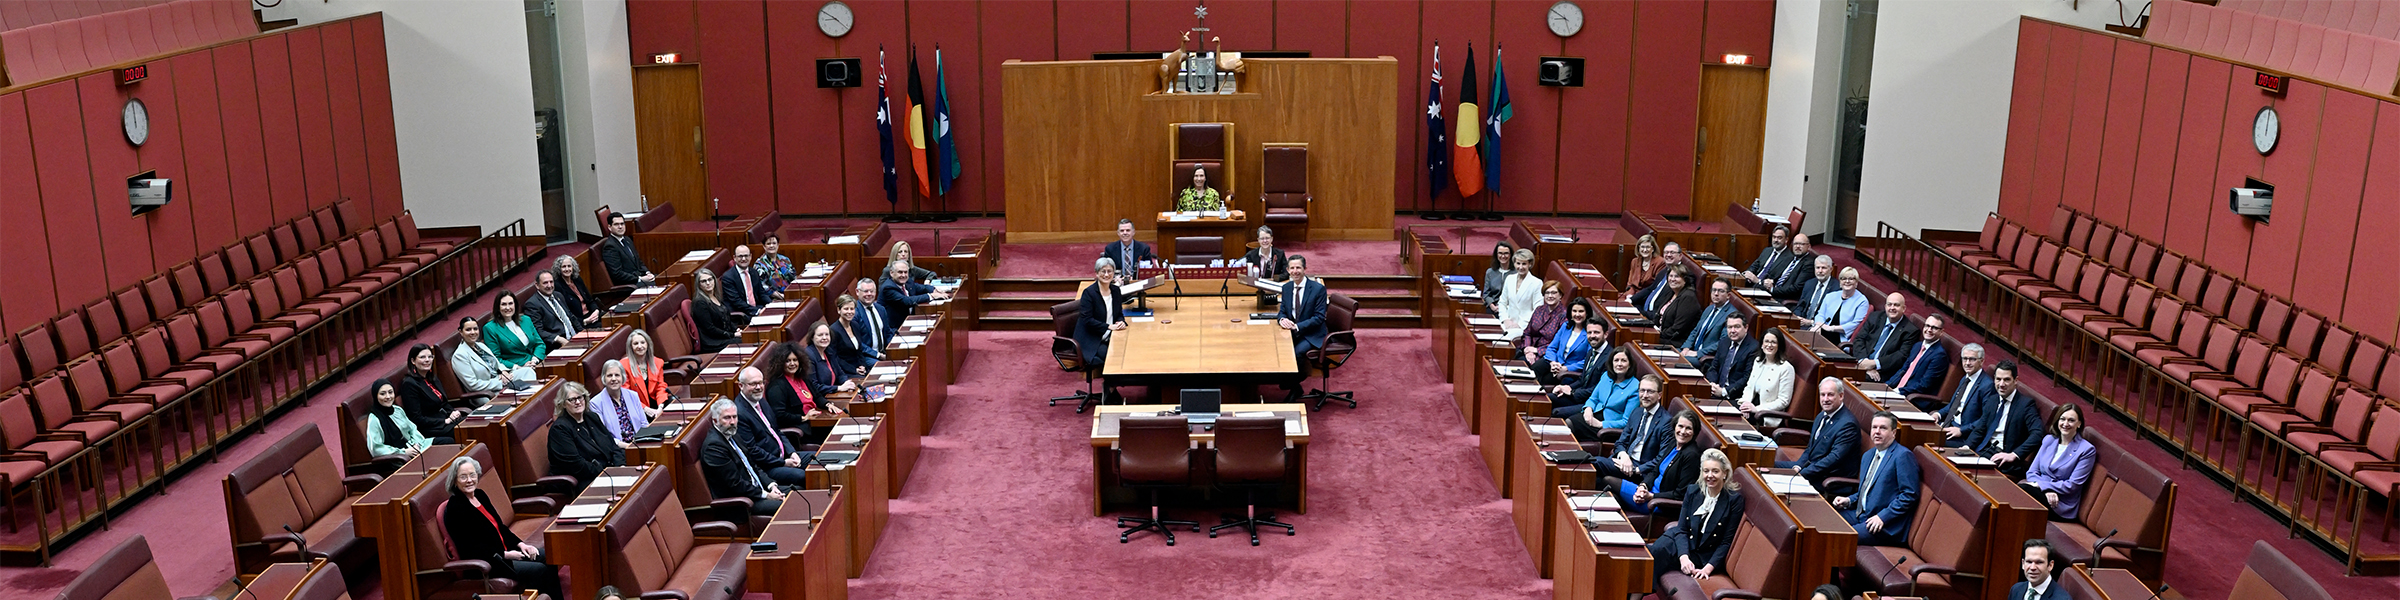 Senate Parliament of Australia